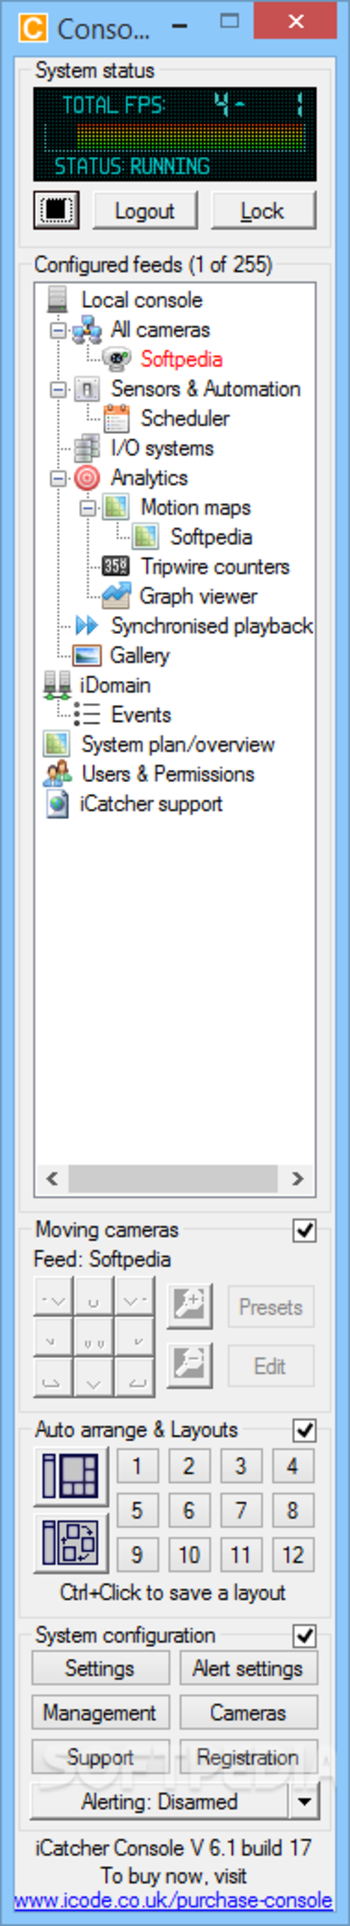 i-Catcher Console screenshot